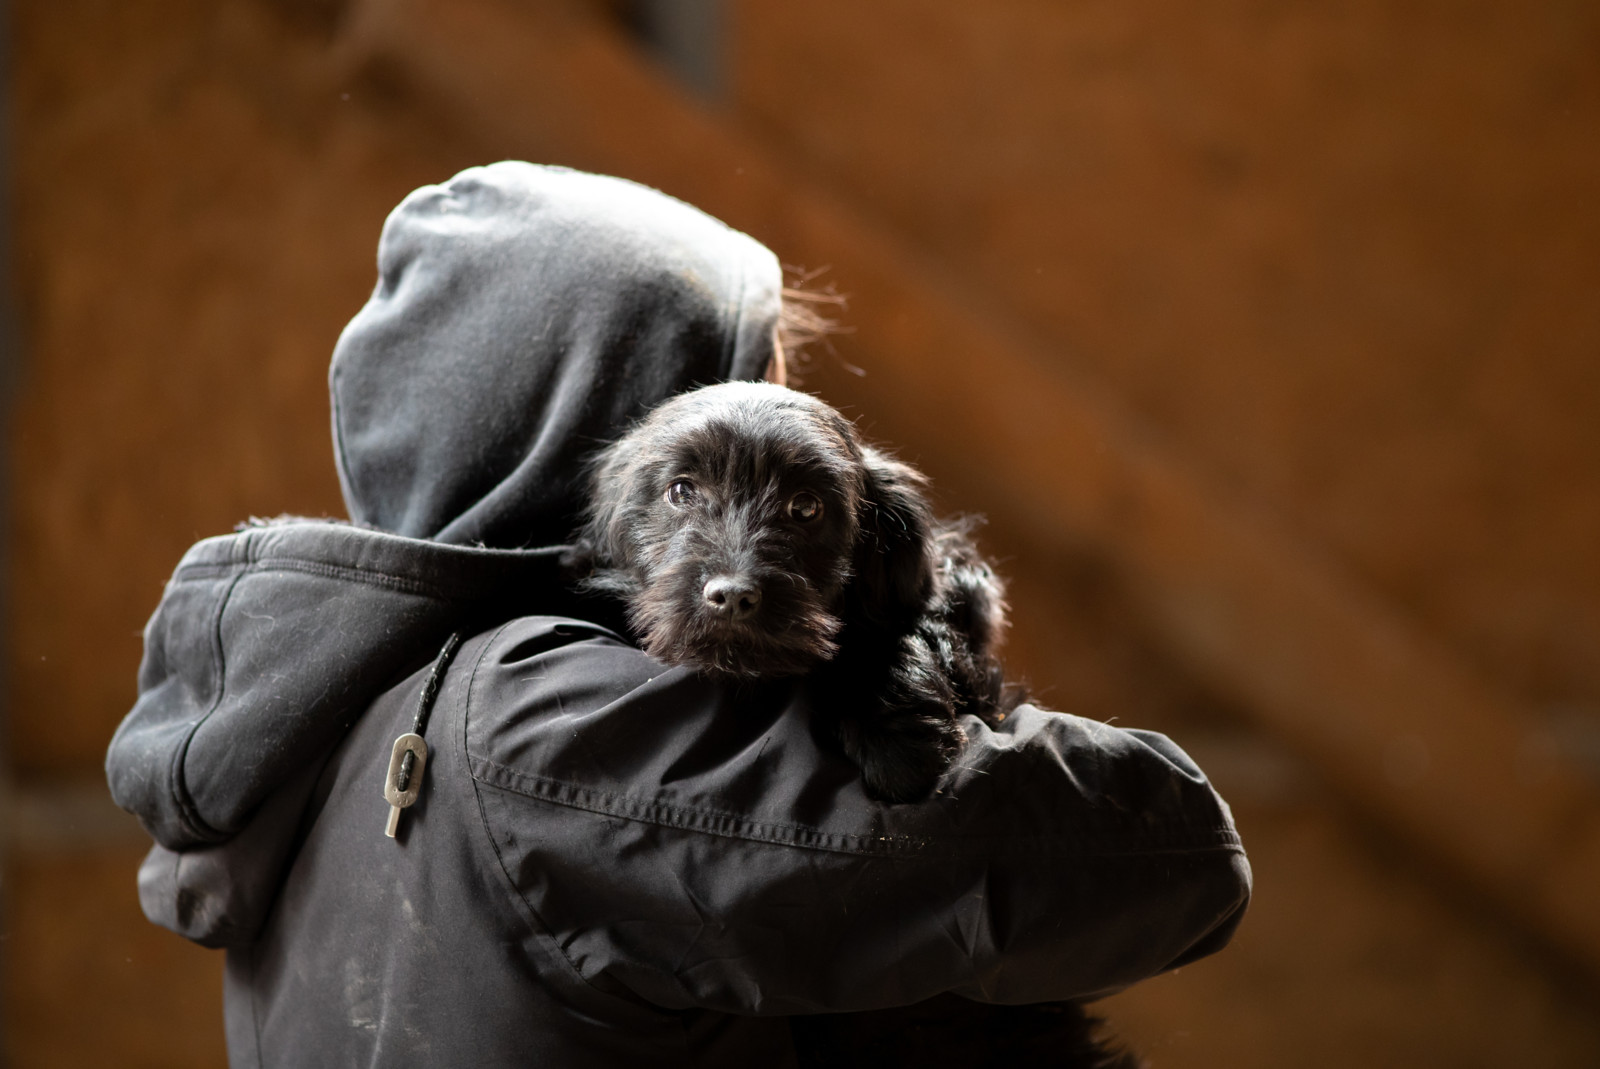 Einfach mitgenommen: Wie können Hunde vor einer Entführung geschützt werden?